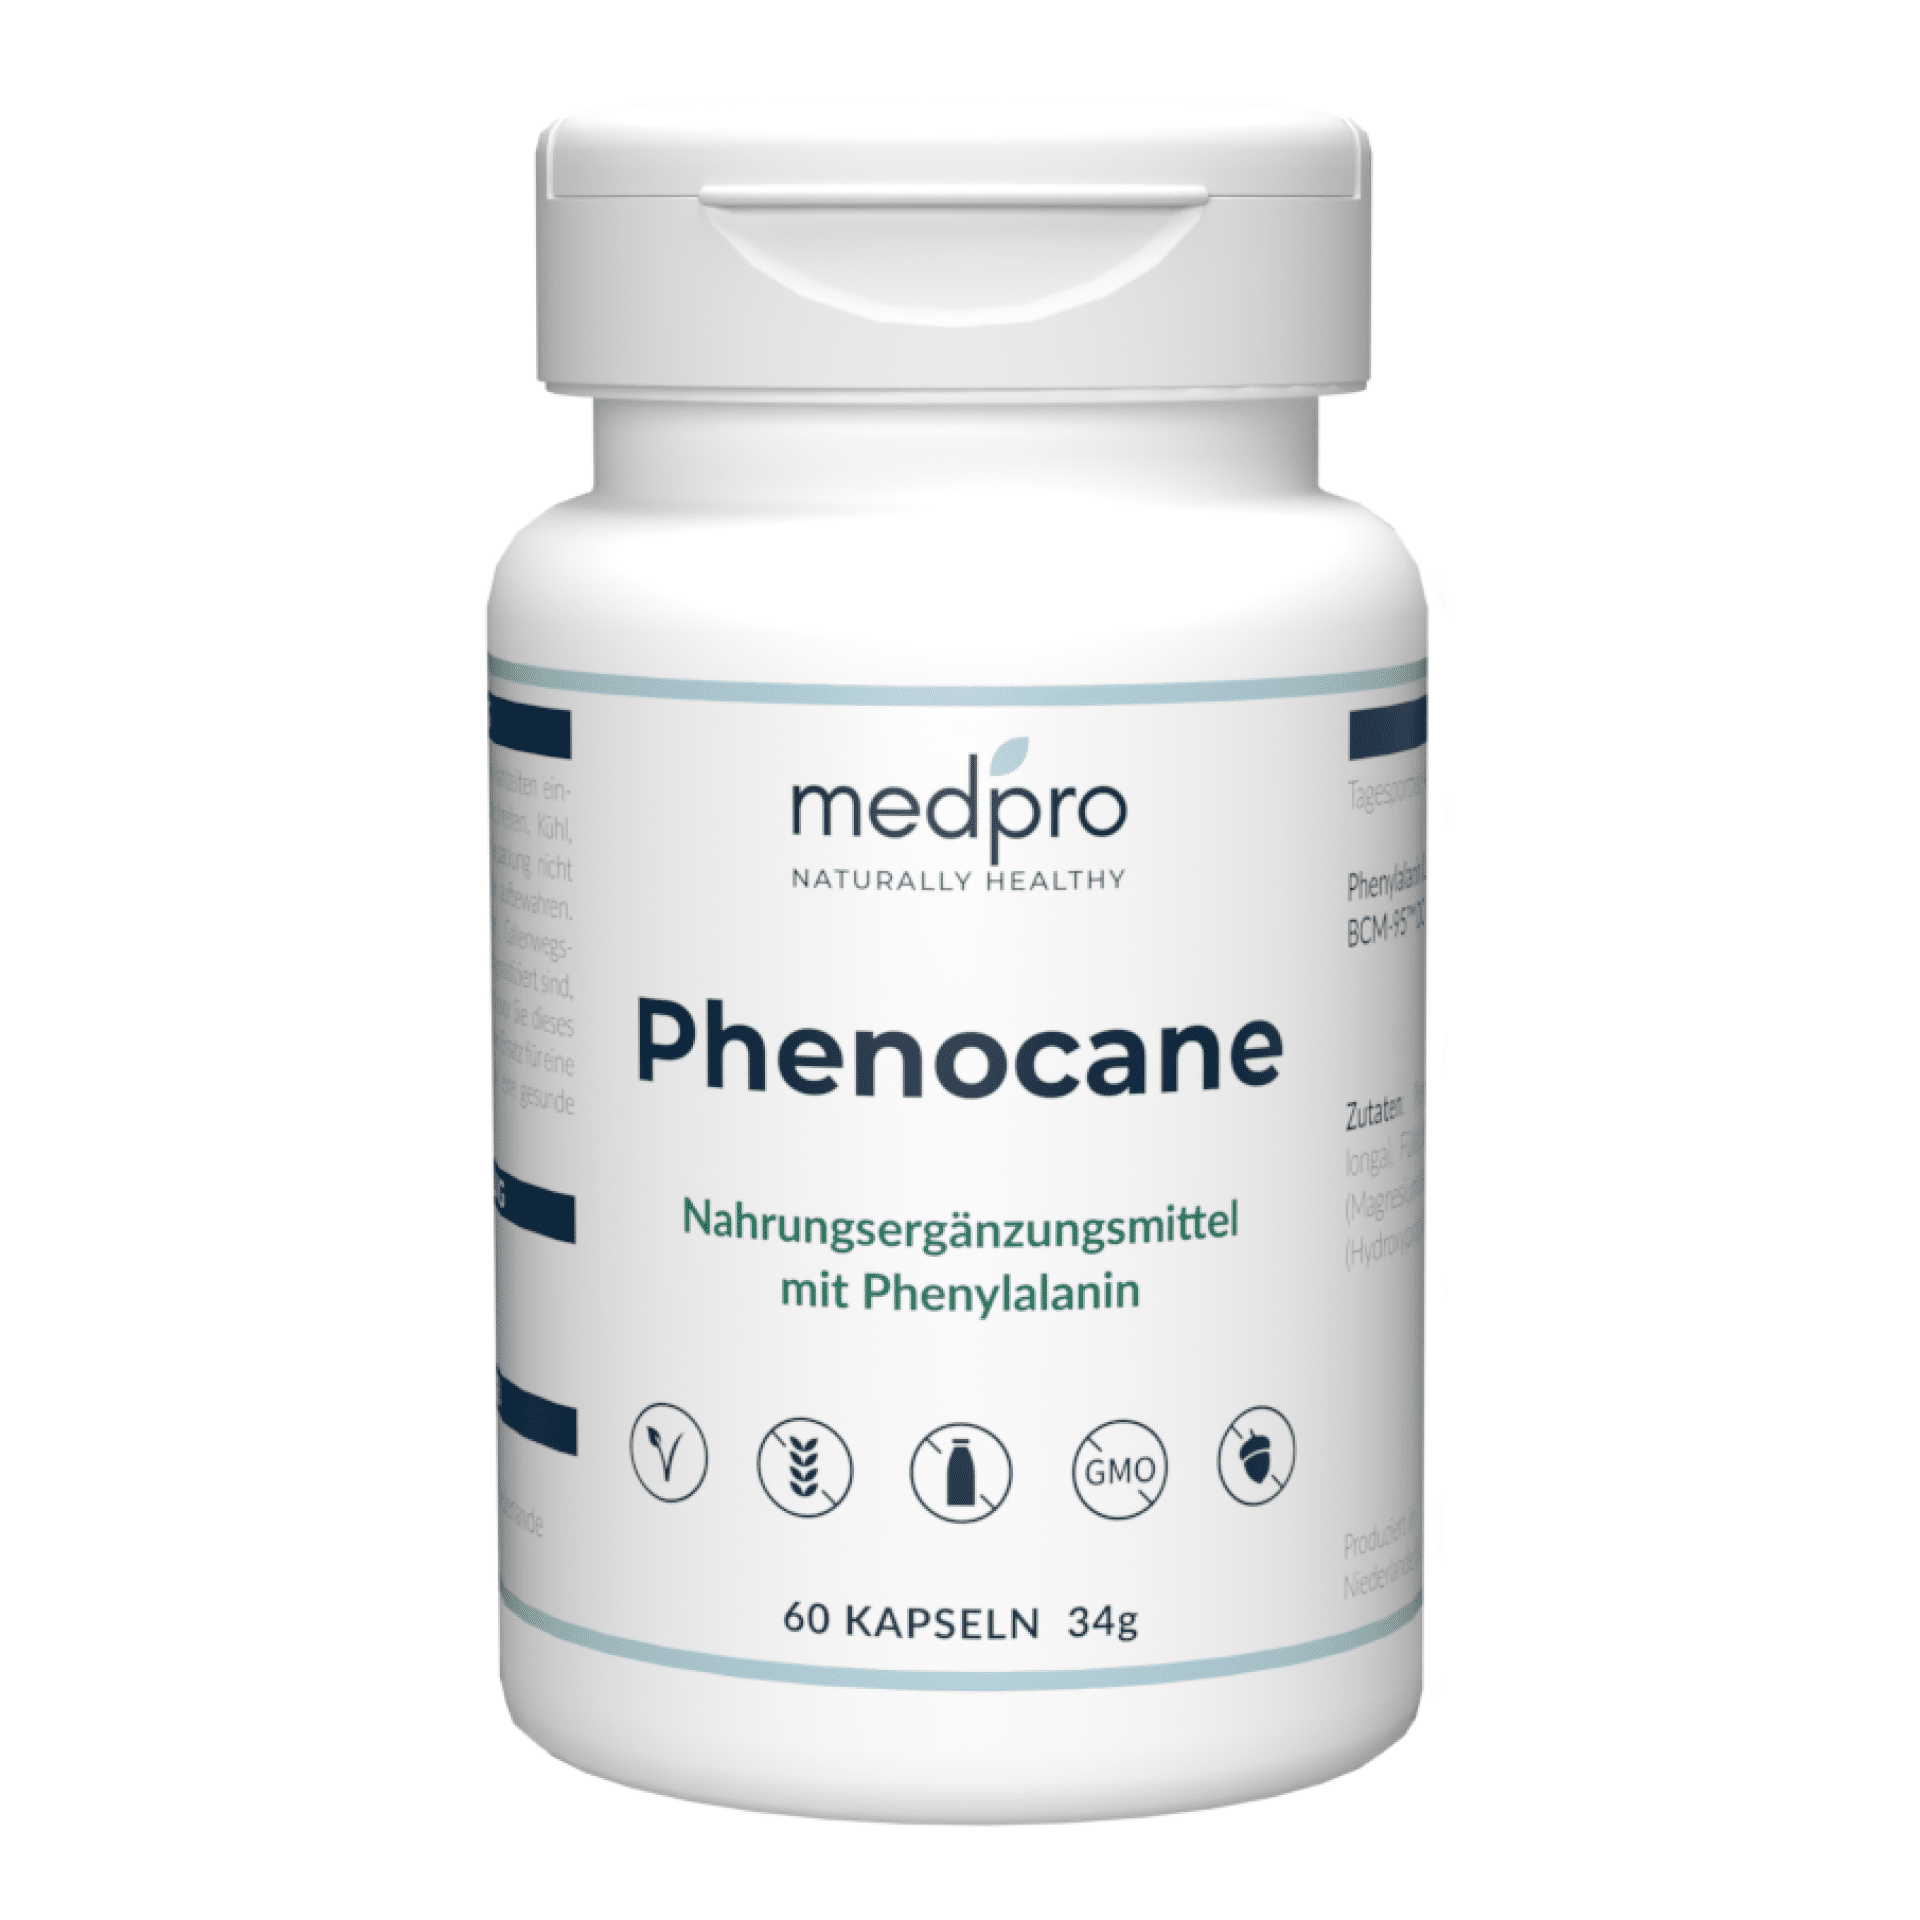 Phenocane tablet bottle